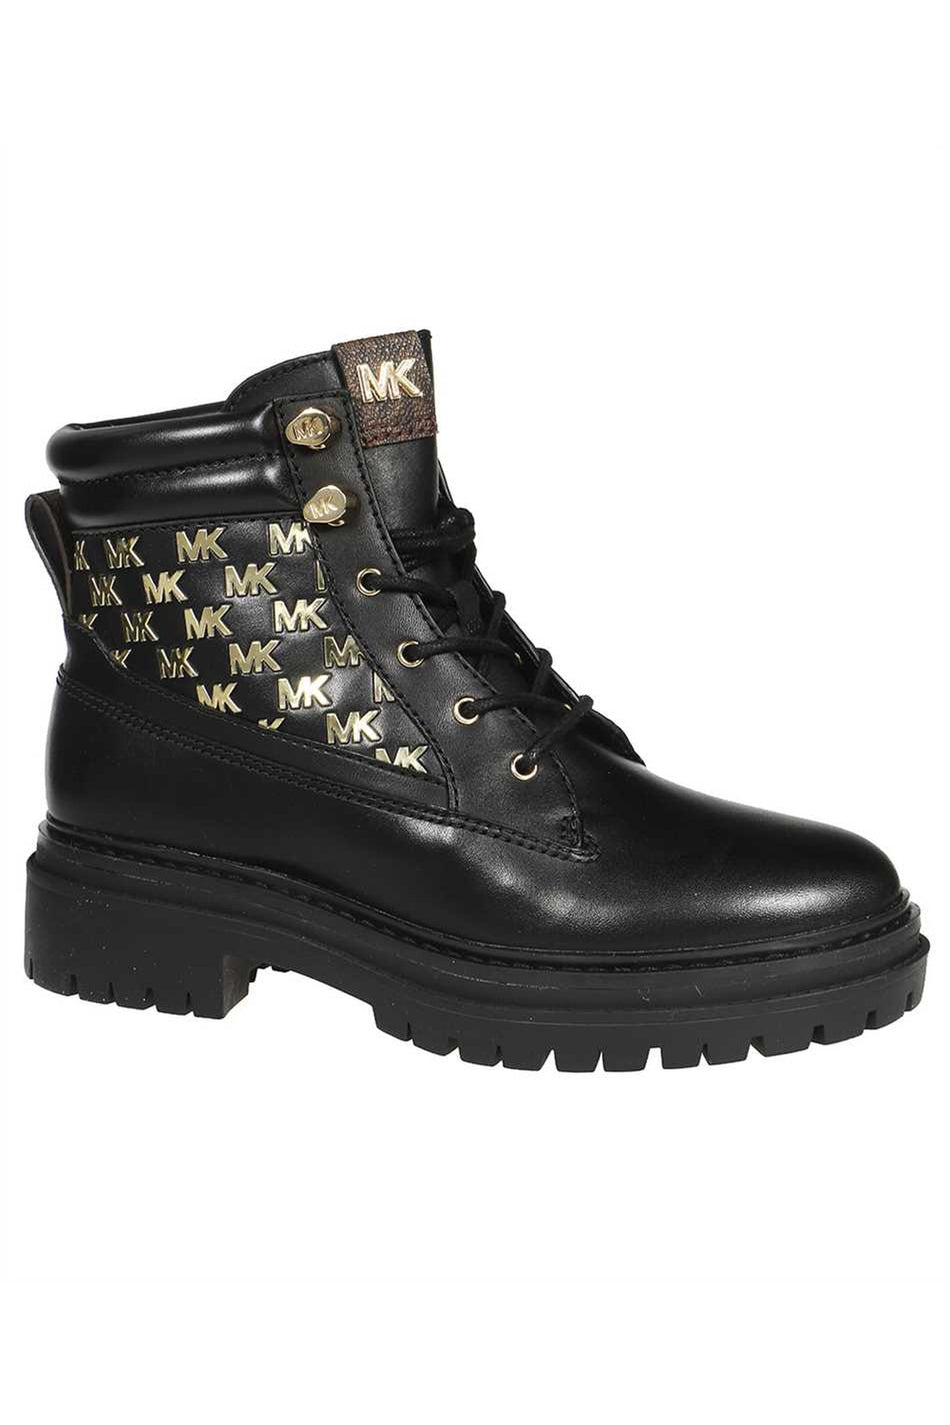 Leather lace-up shoes-MICHAEL MICHAEL KORS-OUTLET-SALE-ARCHIVIST